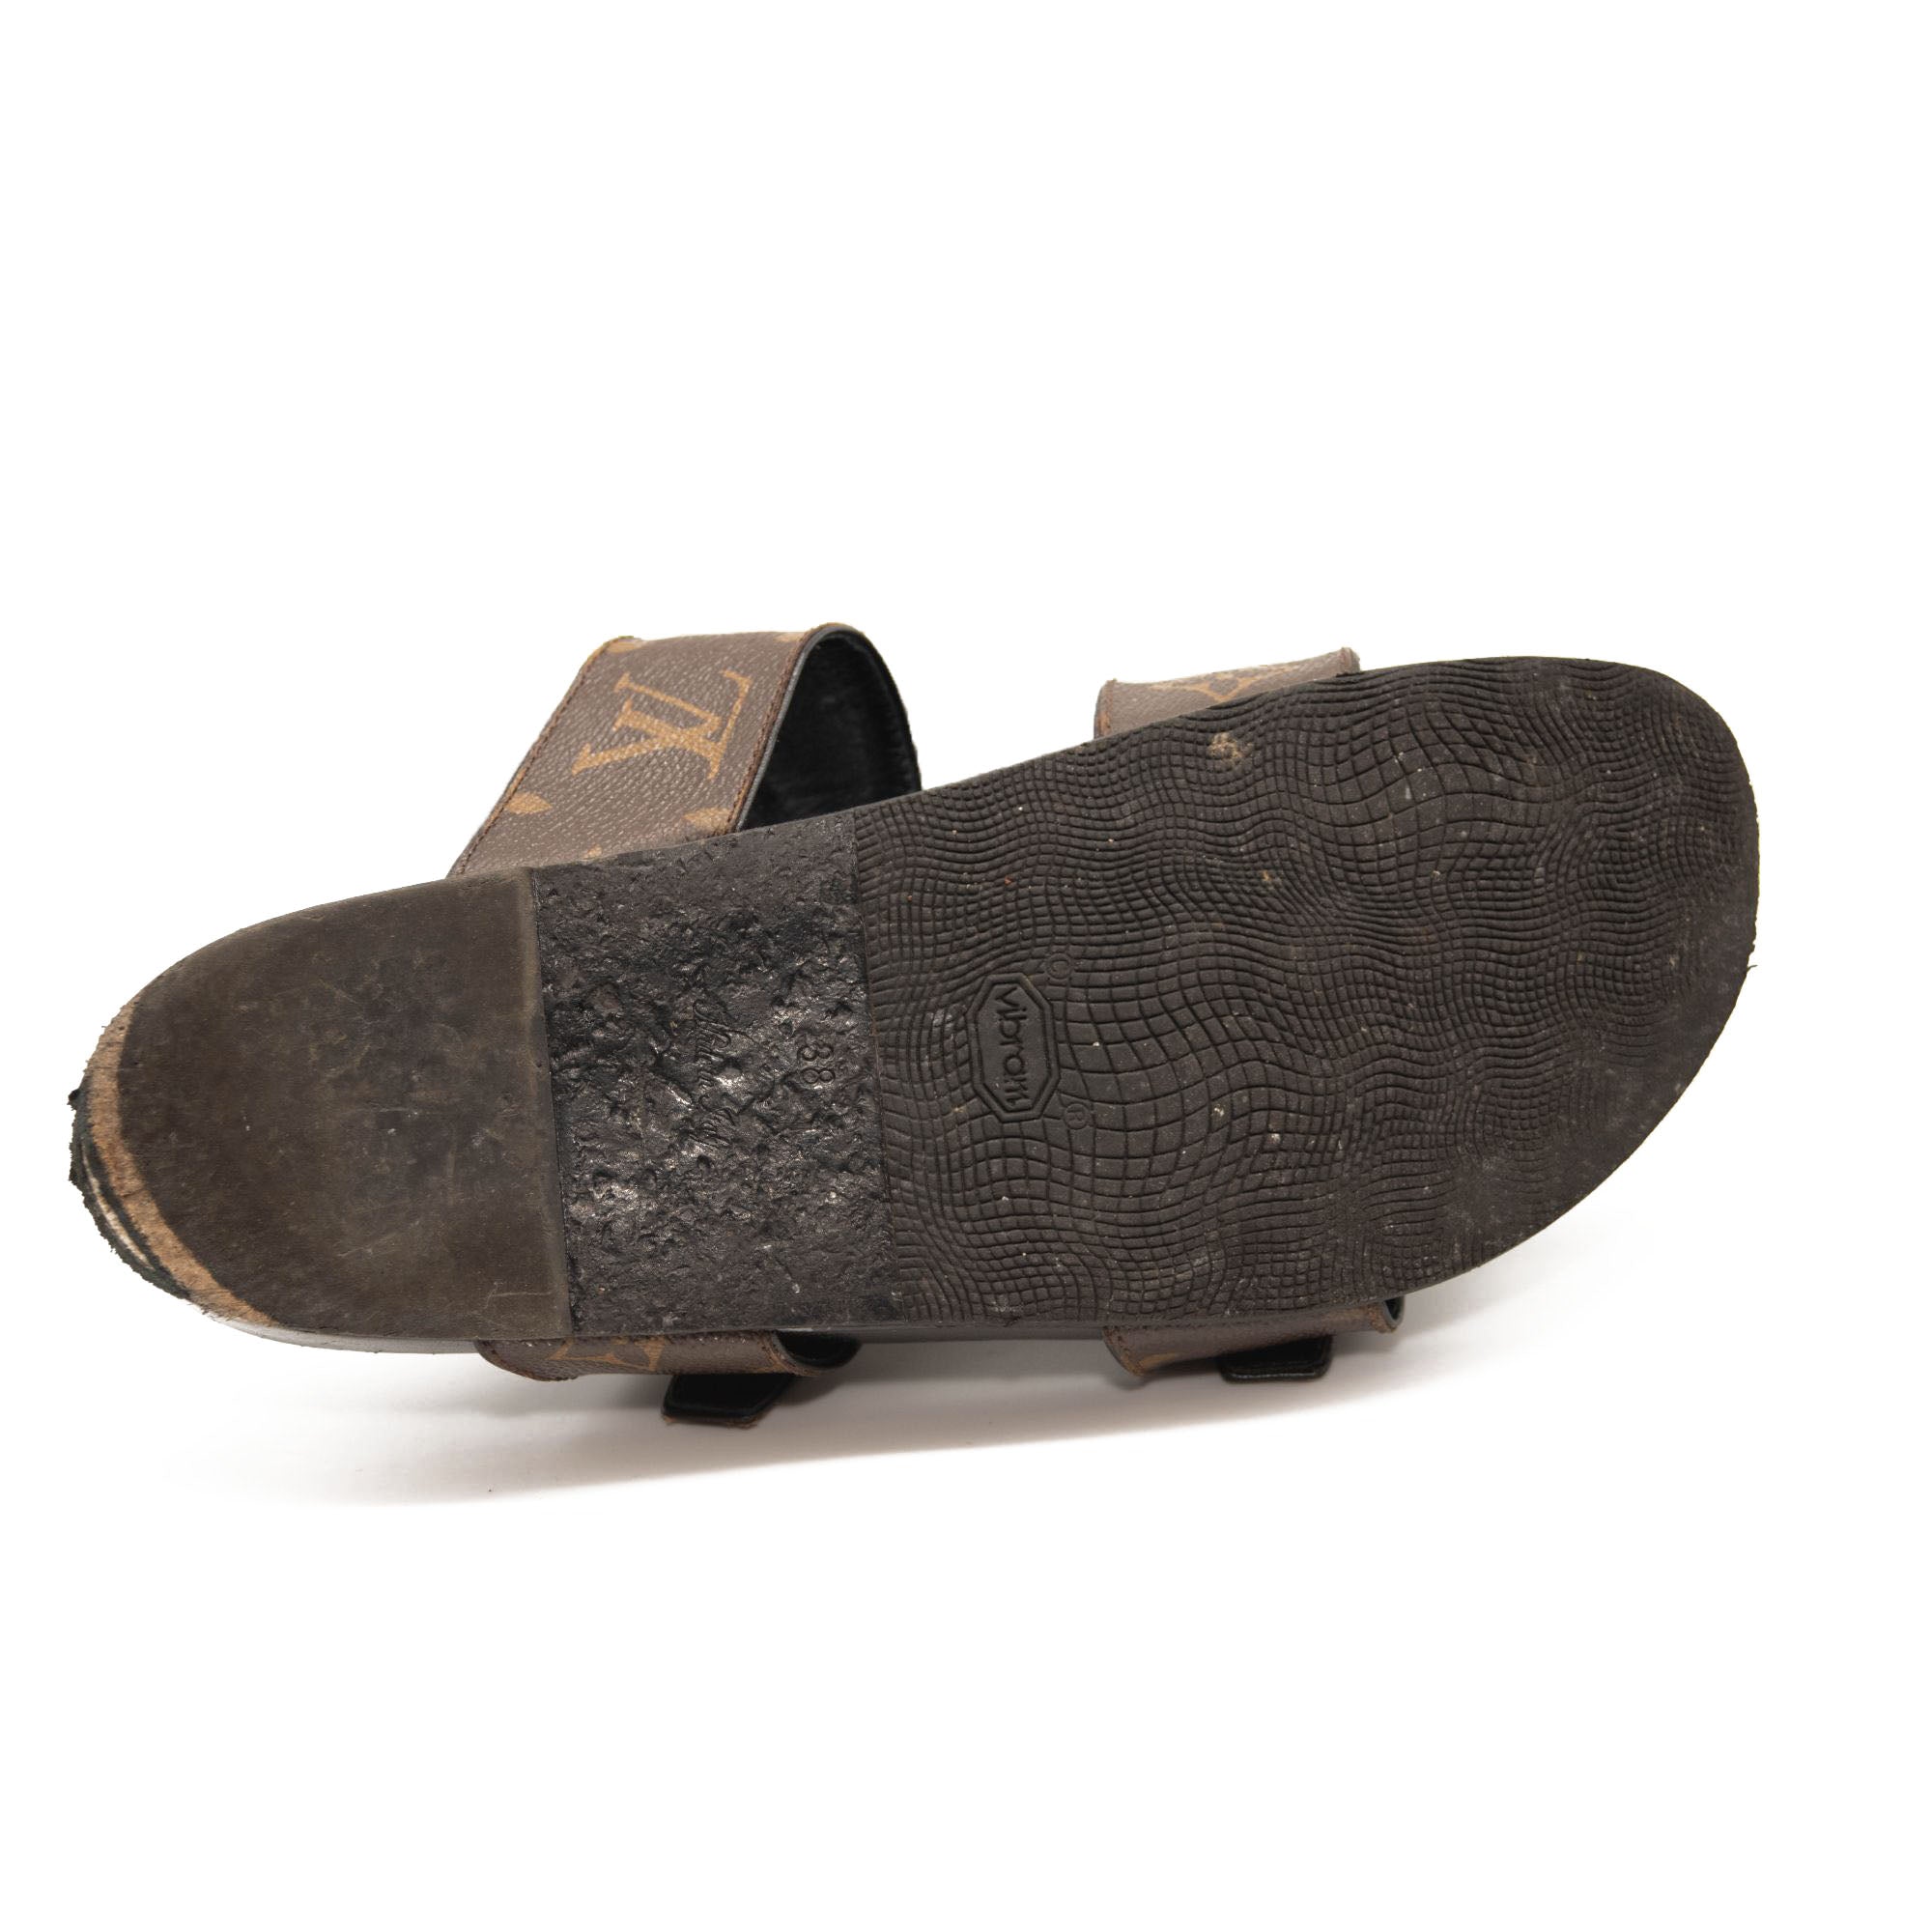 Louis Vuitton Bom Dia Flat Mule Slides Sandals